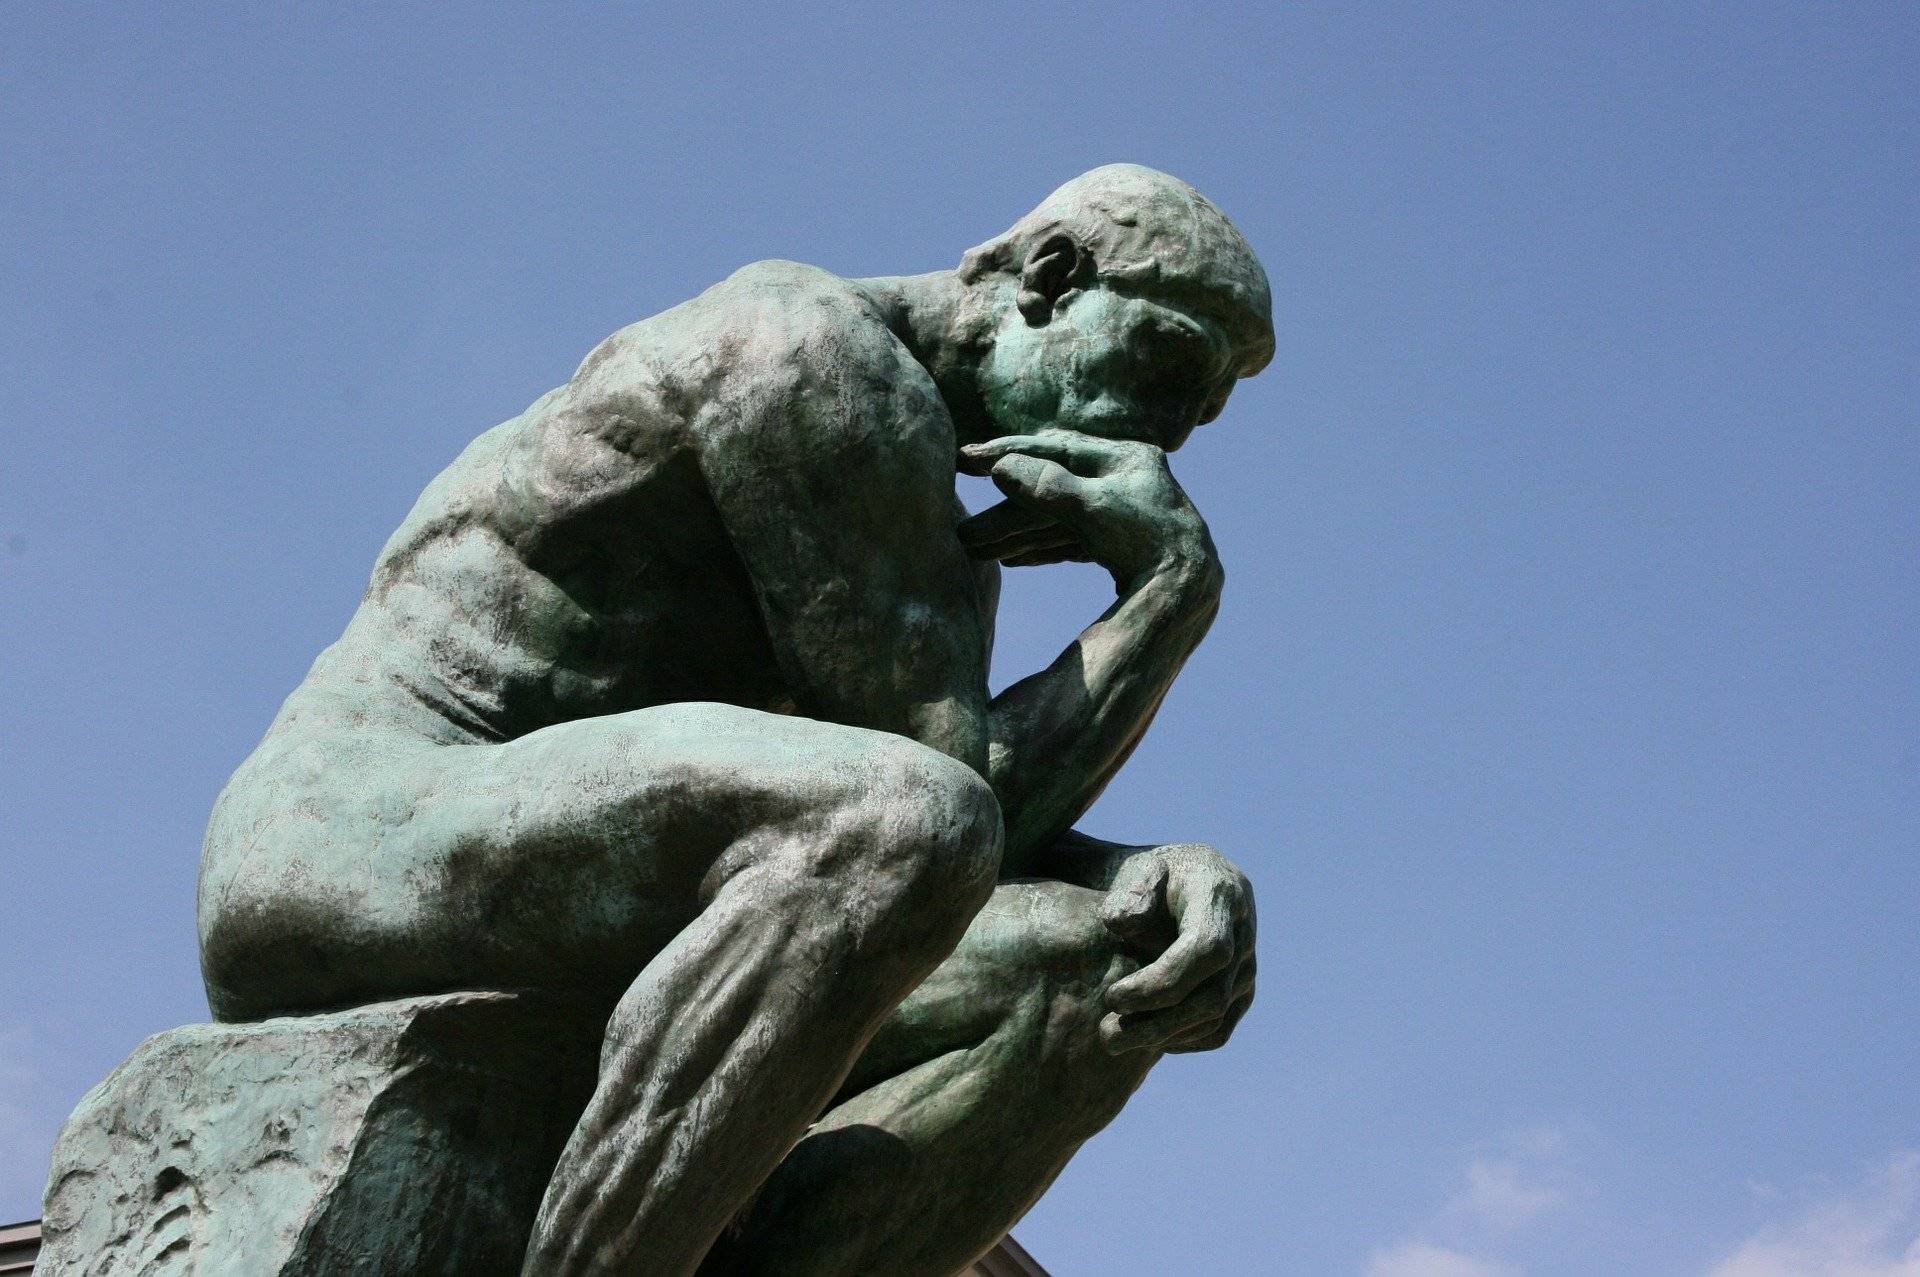 « Des chercheurs qui trouvent, on en cherche ». Le Penseur de Rodin. Crédit photo : Pixabay